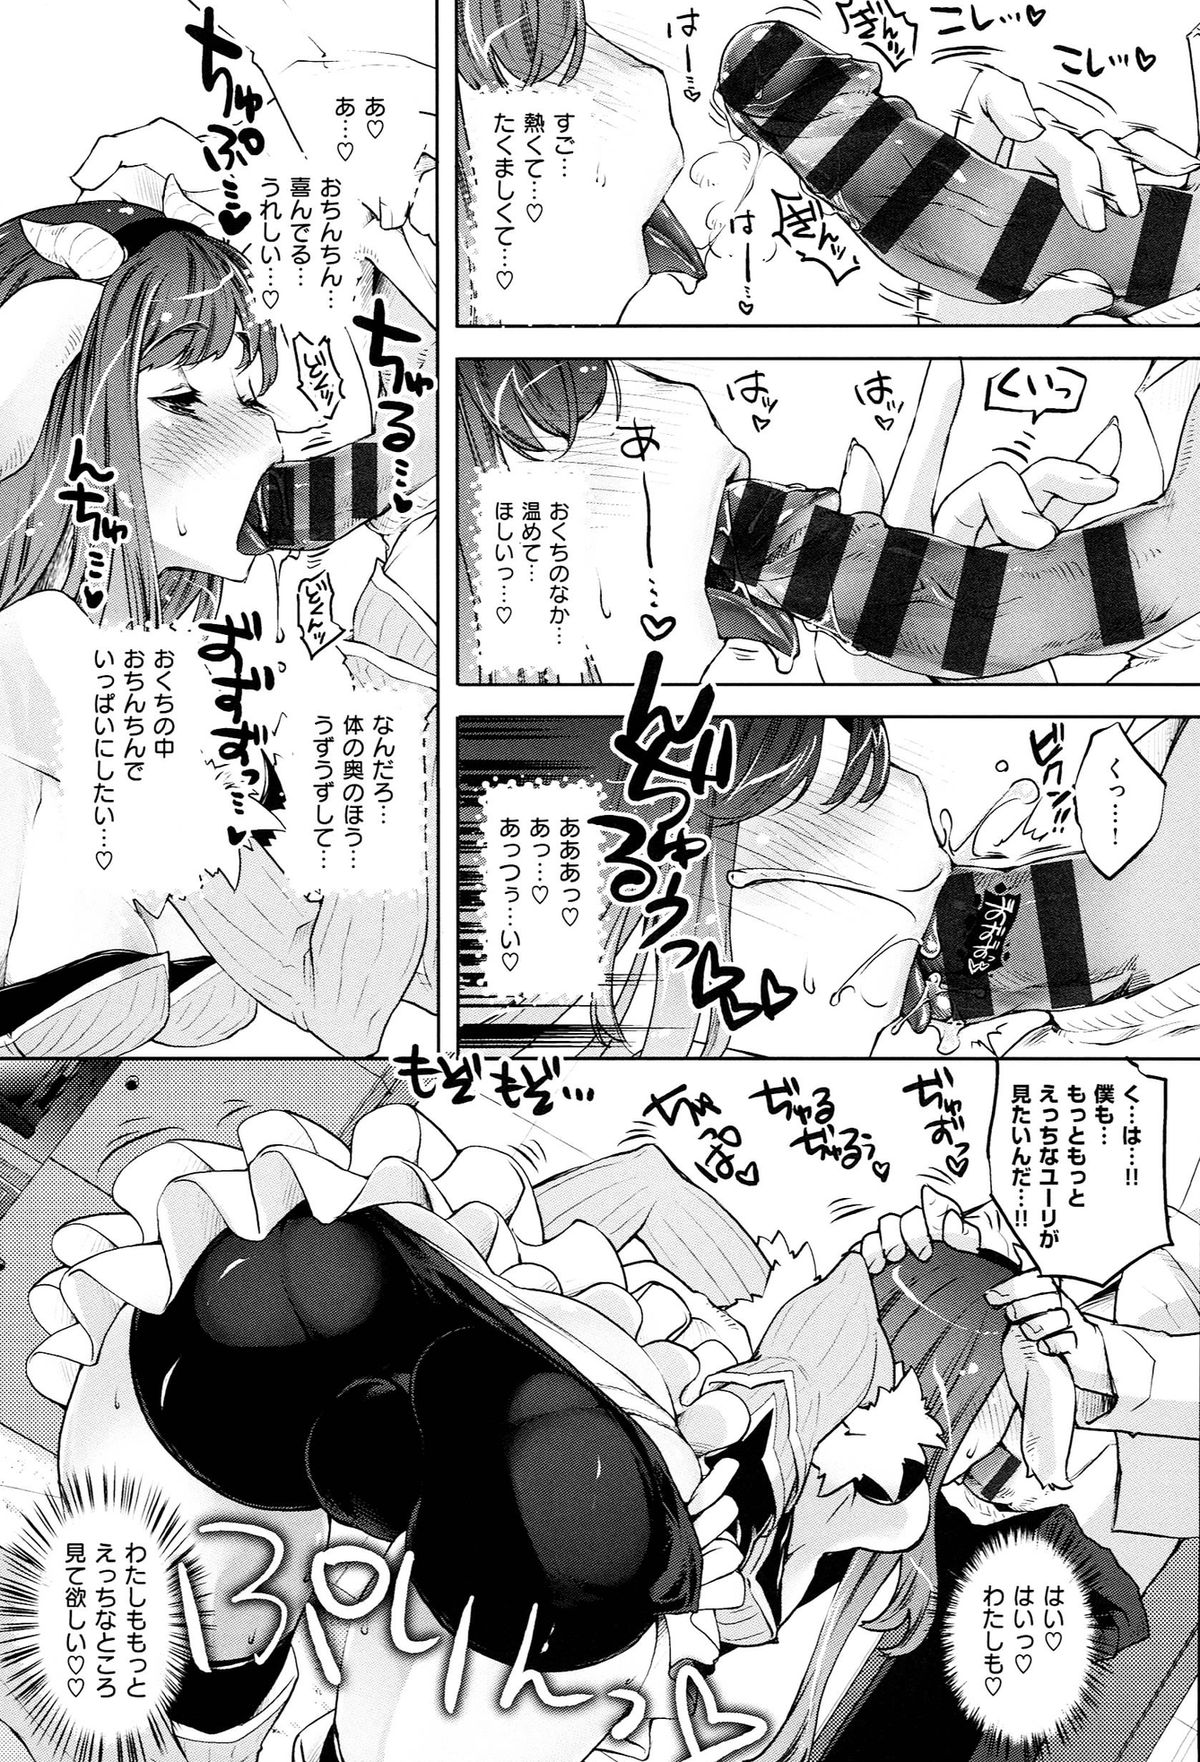 [Thomas] Kimi ga Tame Kokoro Gesyou + Toranoana Tokuten Kakioroshi 8P Shousasshi  Kimi ga Tame Kokoro Gesyou Character Works page 39 full